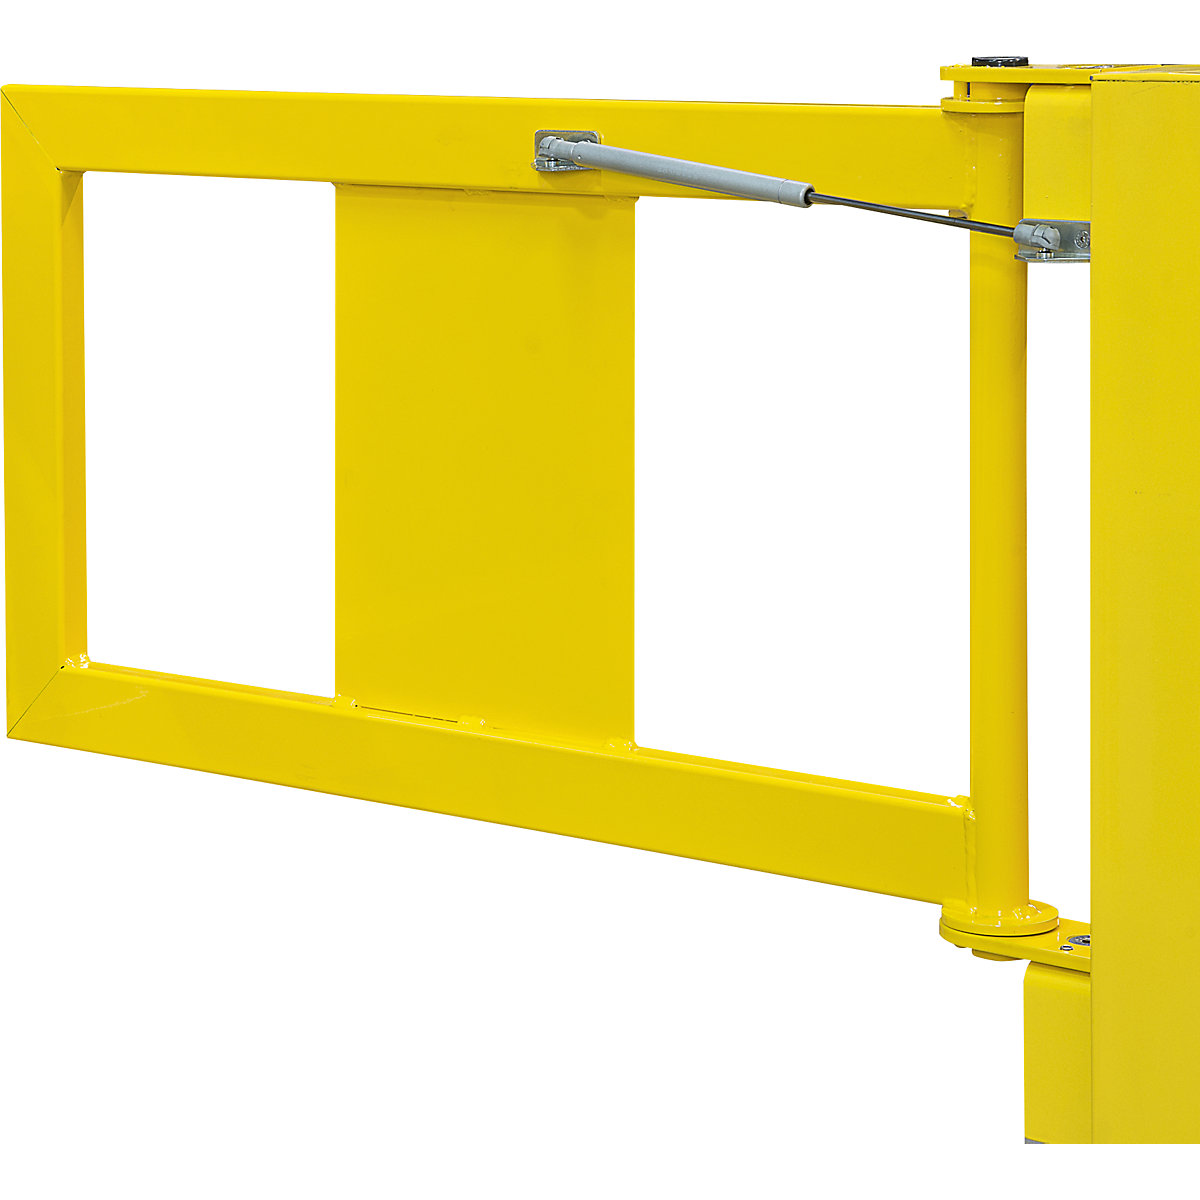 Tür für Sicherheitsgeländer, XL-Line, gelb, mit Gasdruckfeder, selbstschließend